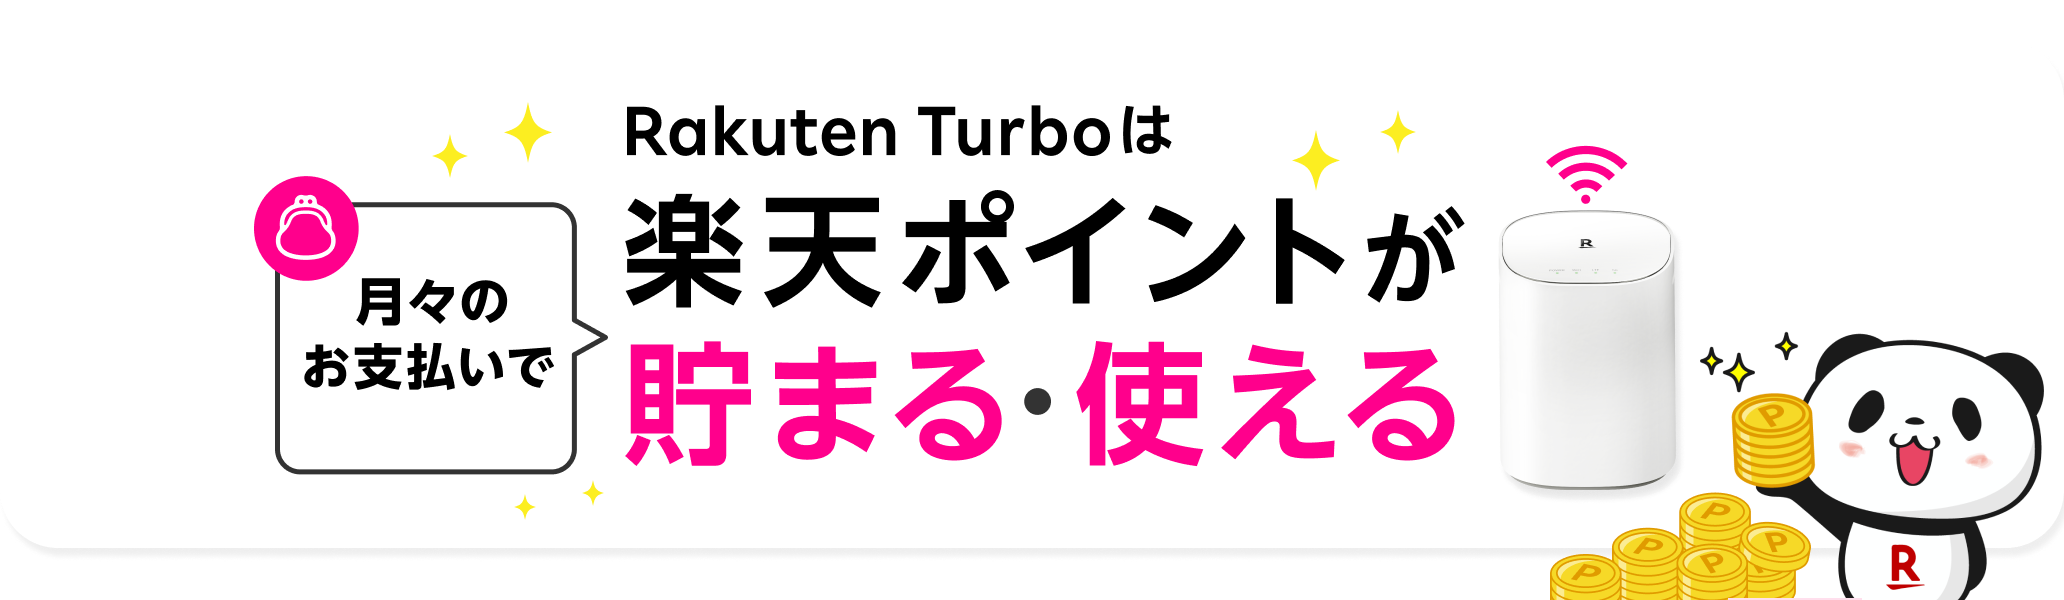 Rakuten Turboは月々のお支払いで楽天ポイントが貯まる・使える